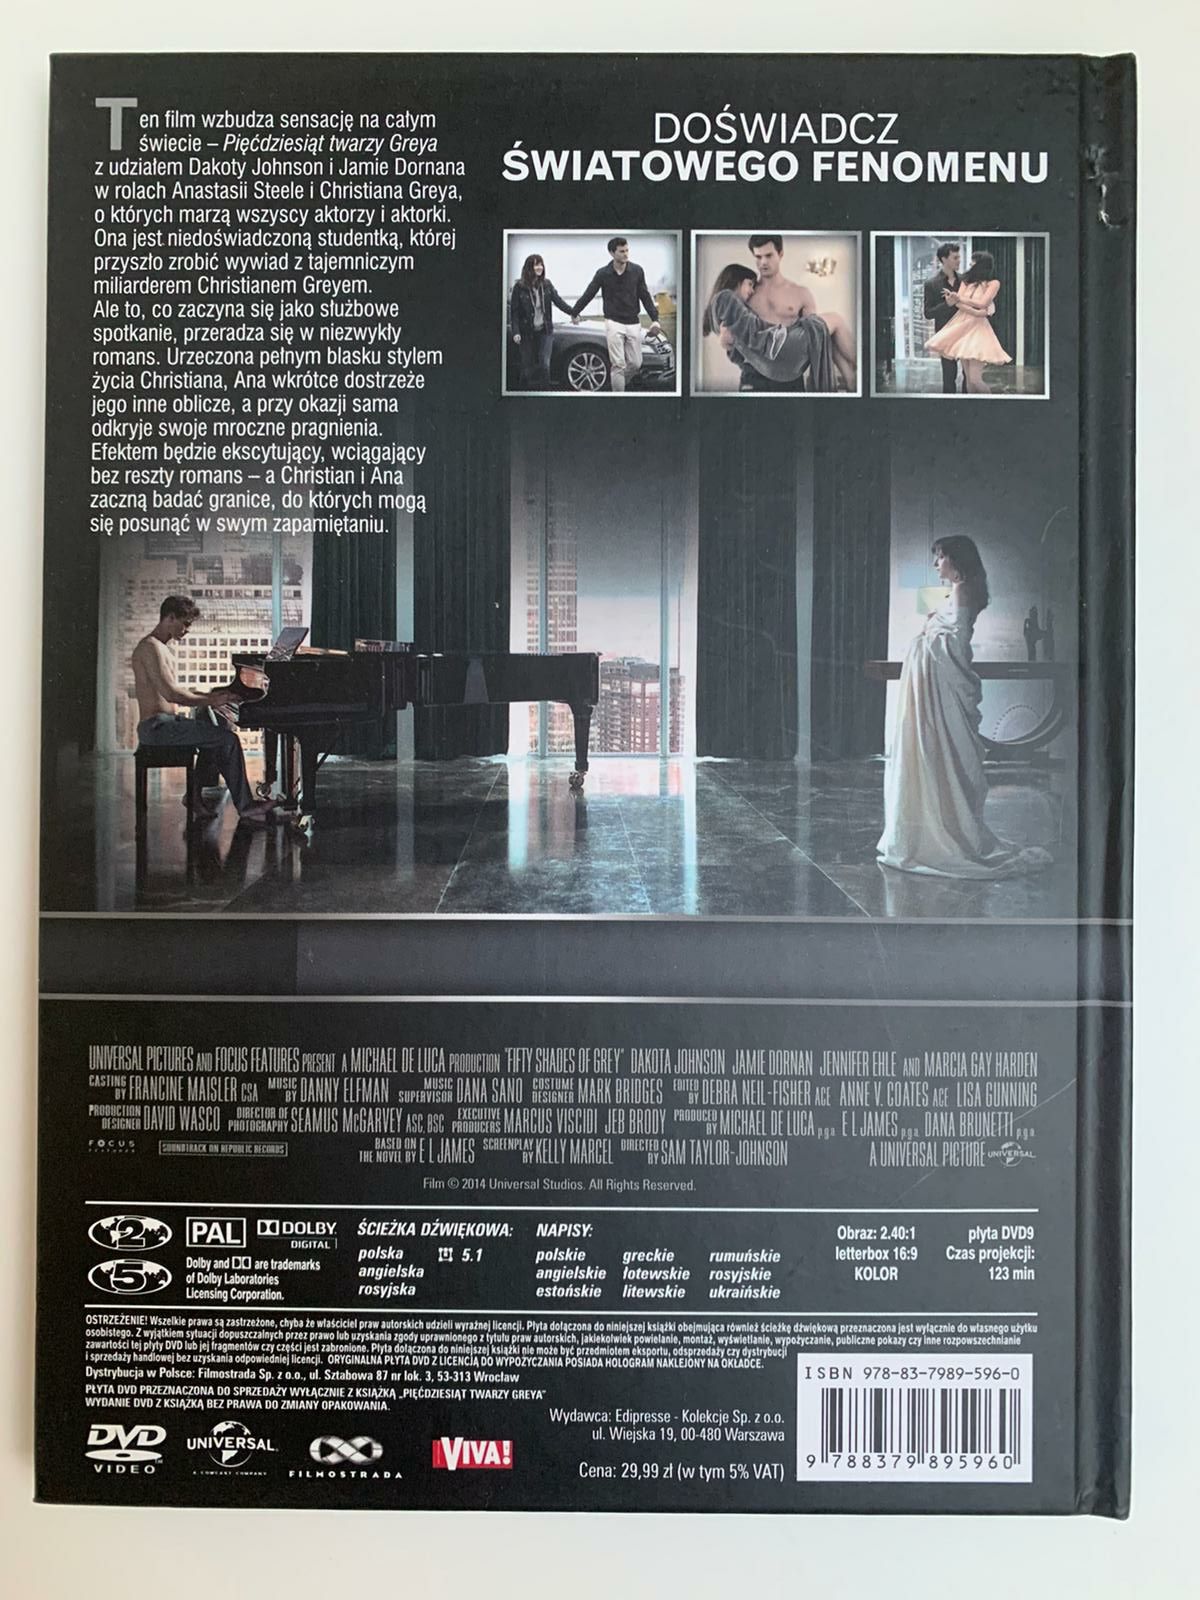 Audiobooki "Grey"- E. L. James+ gratis Film. Lit. obyczajowa. Zestaw